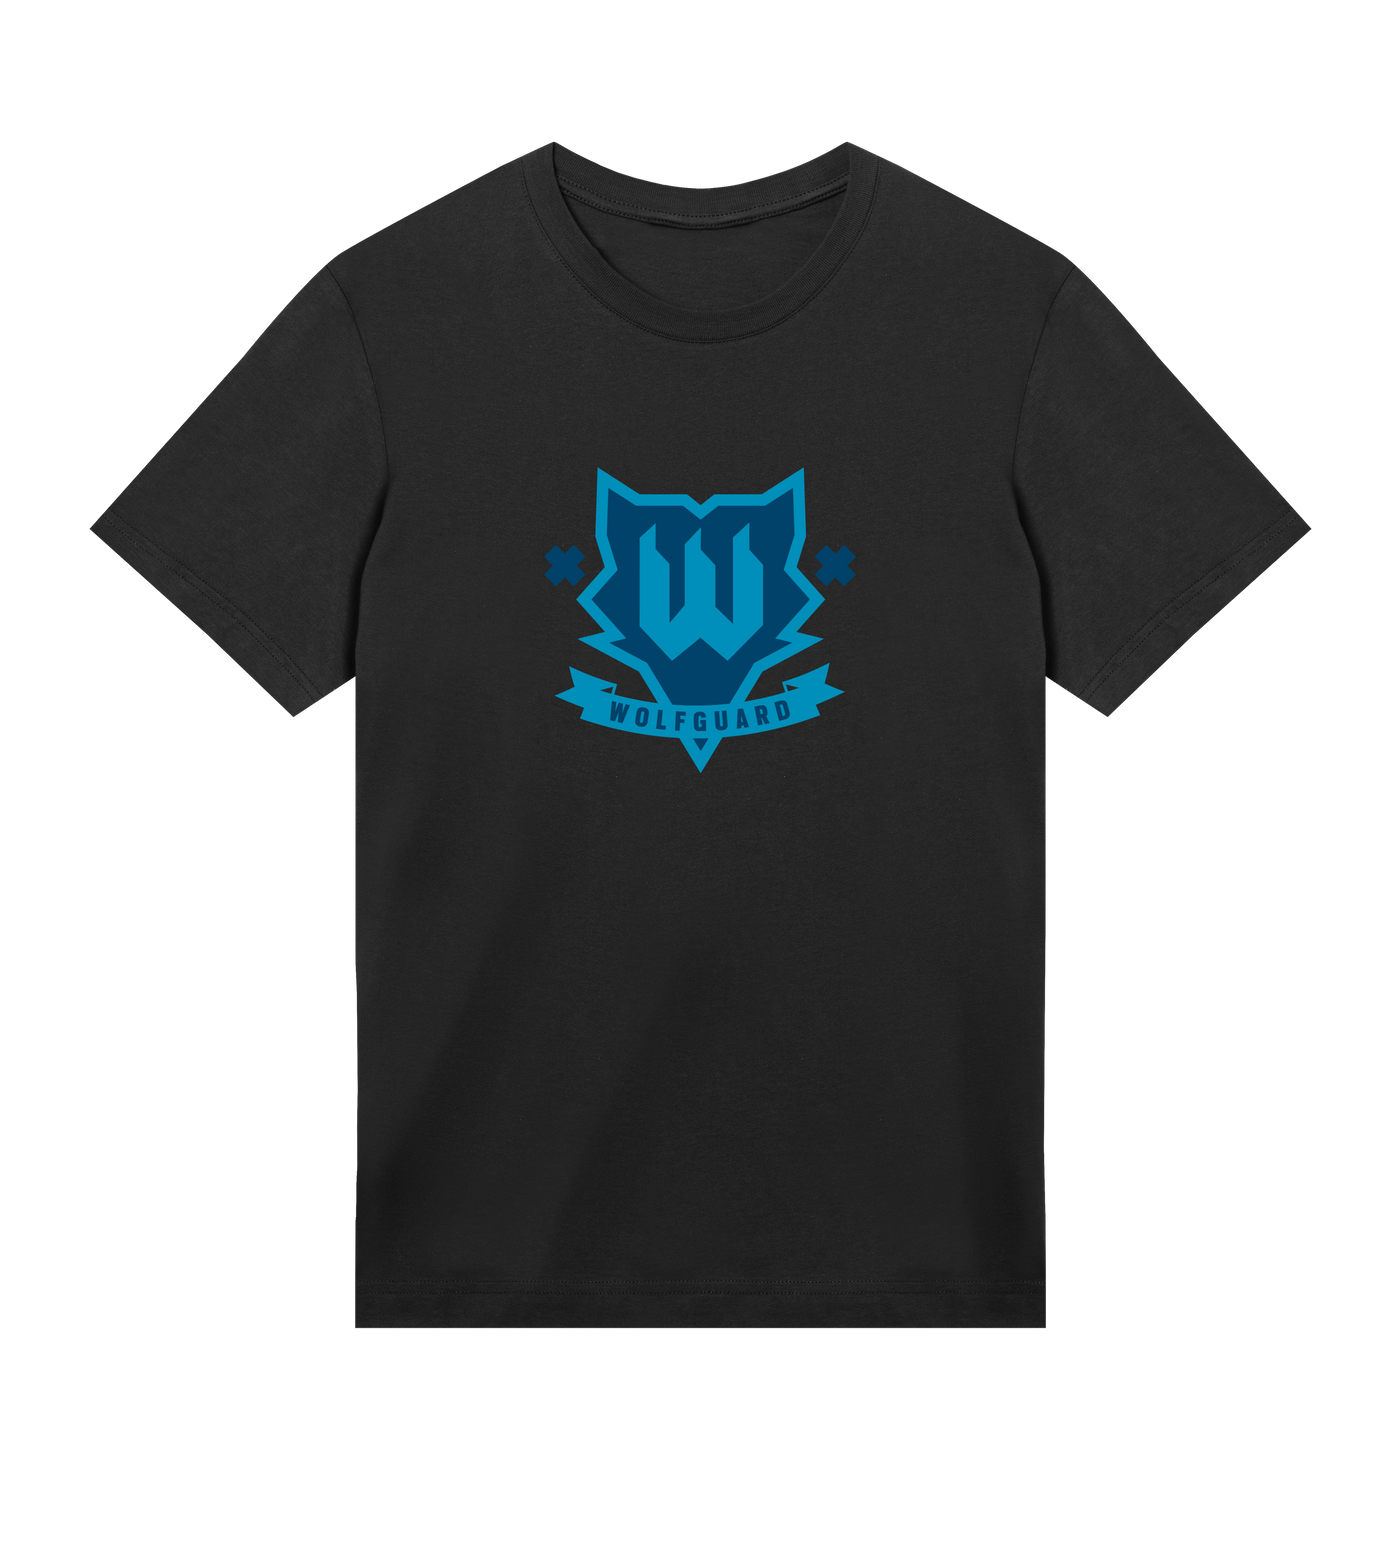 6 SIEGE - Wolfguard T-shirt